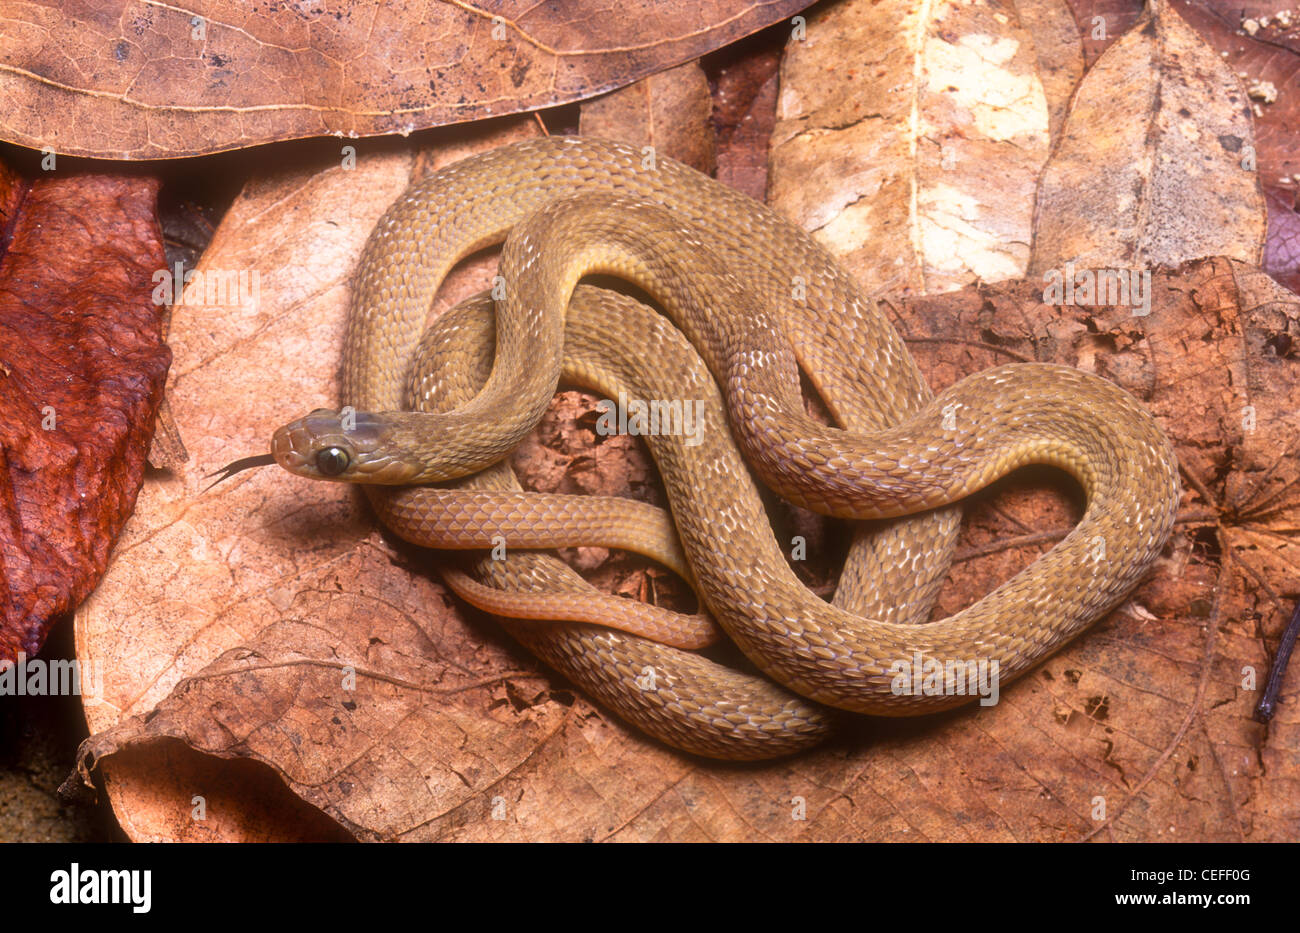 West African Egg eating snake, Dasypeltis fasciata Stock Photo